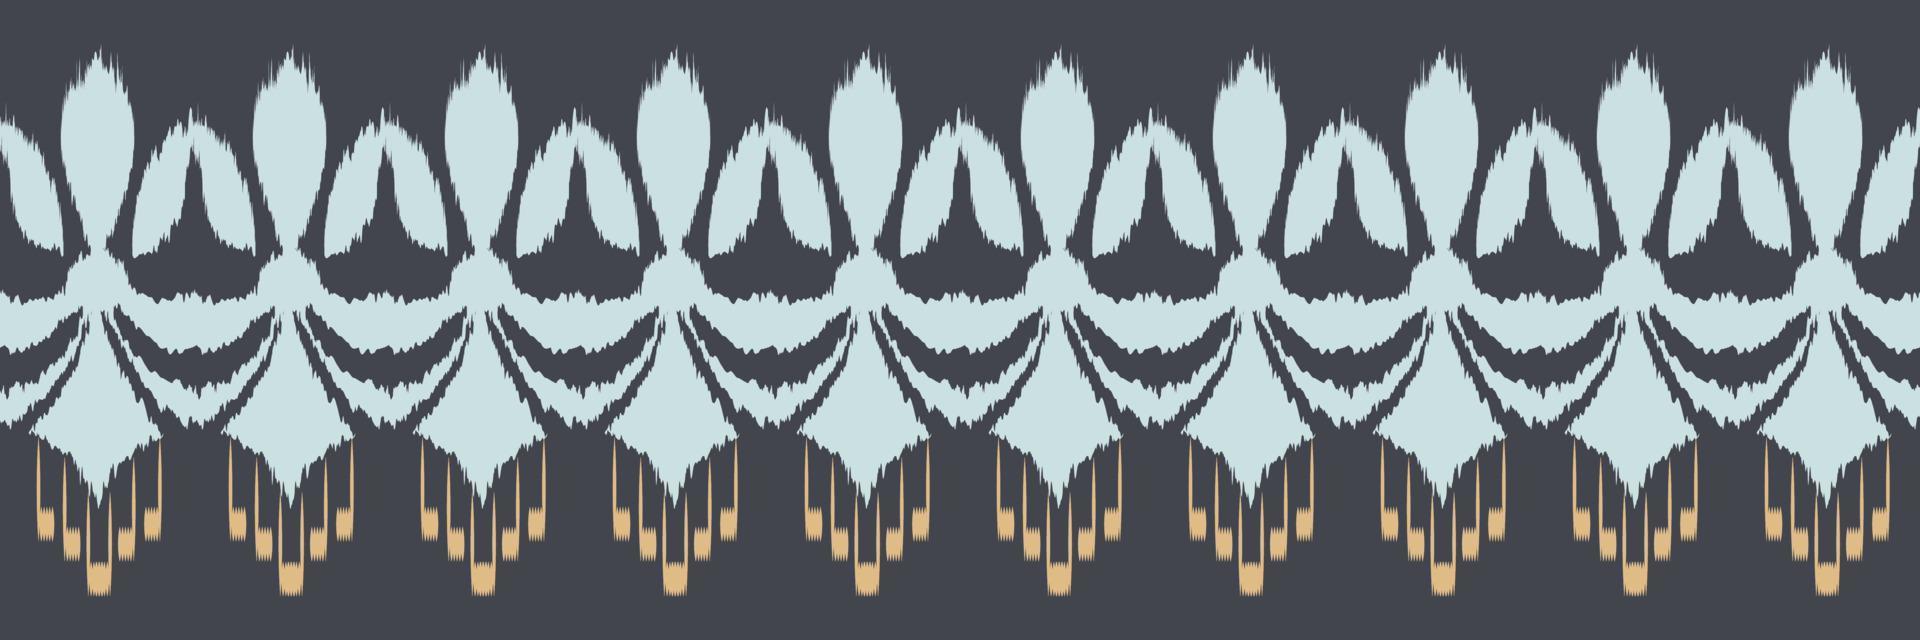 ikat grenze stammeskunst nahtloses muster. ethnische geometrische batik ikkat digitaler vektor textildesign für drucke stoff saree mughal pinsel symbol schwaden textur kurti kurtis kurtas